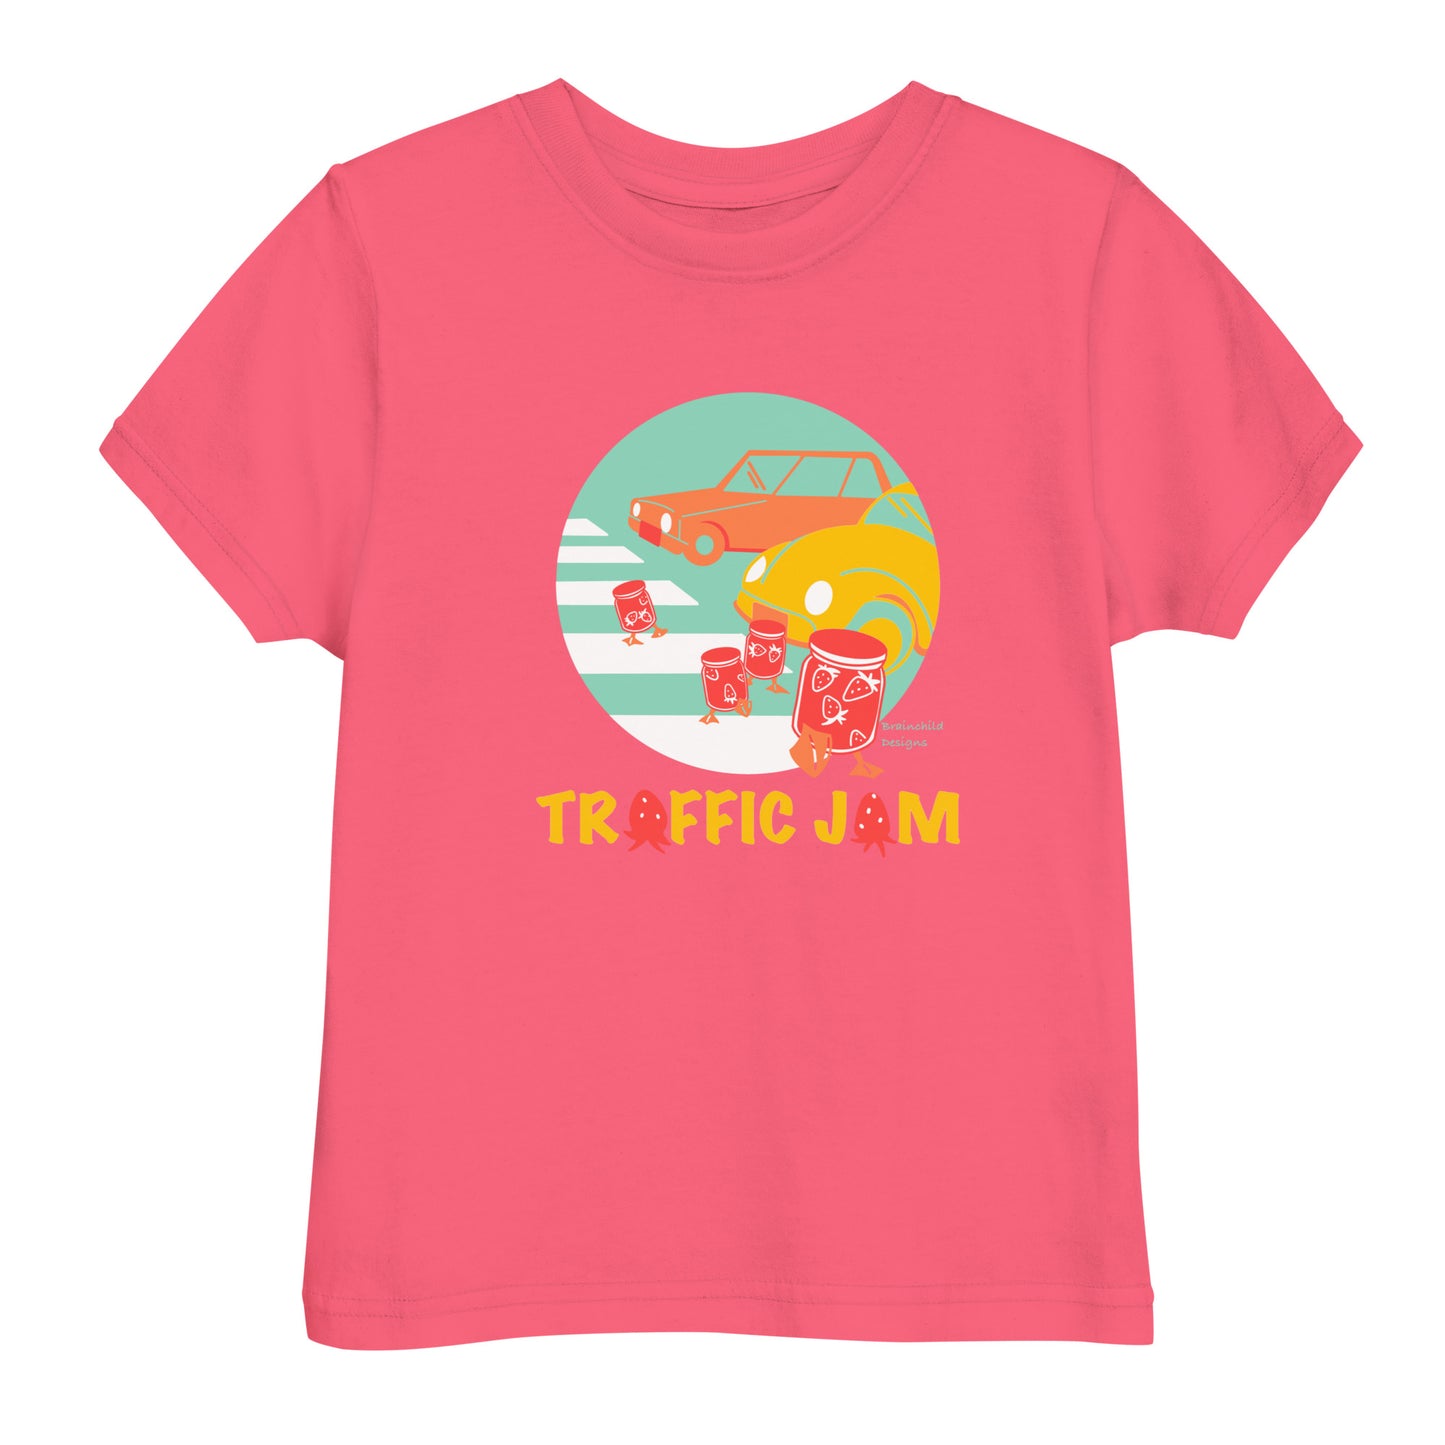 A Twist on Traffic Jam - Toddler Unisex Jersey T-Shirt - Brainchild Designs